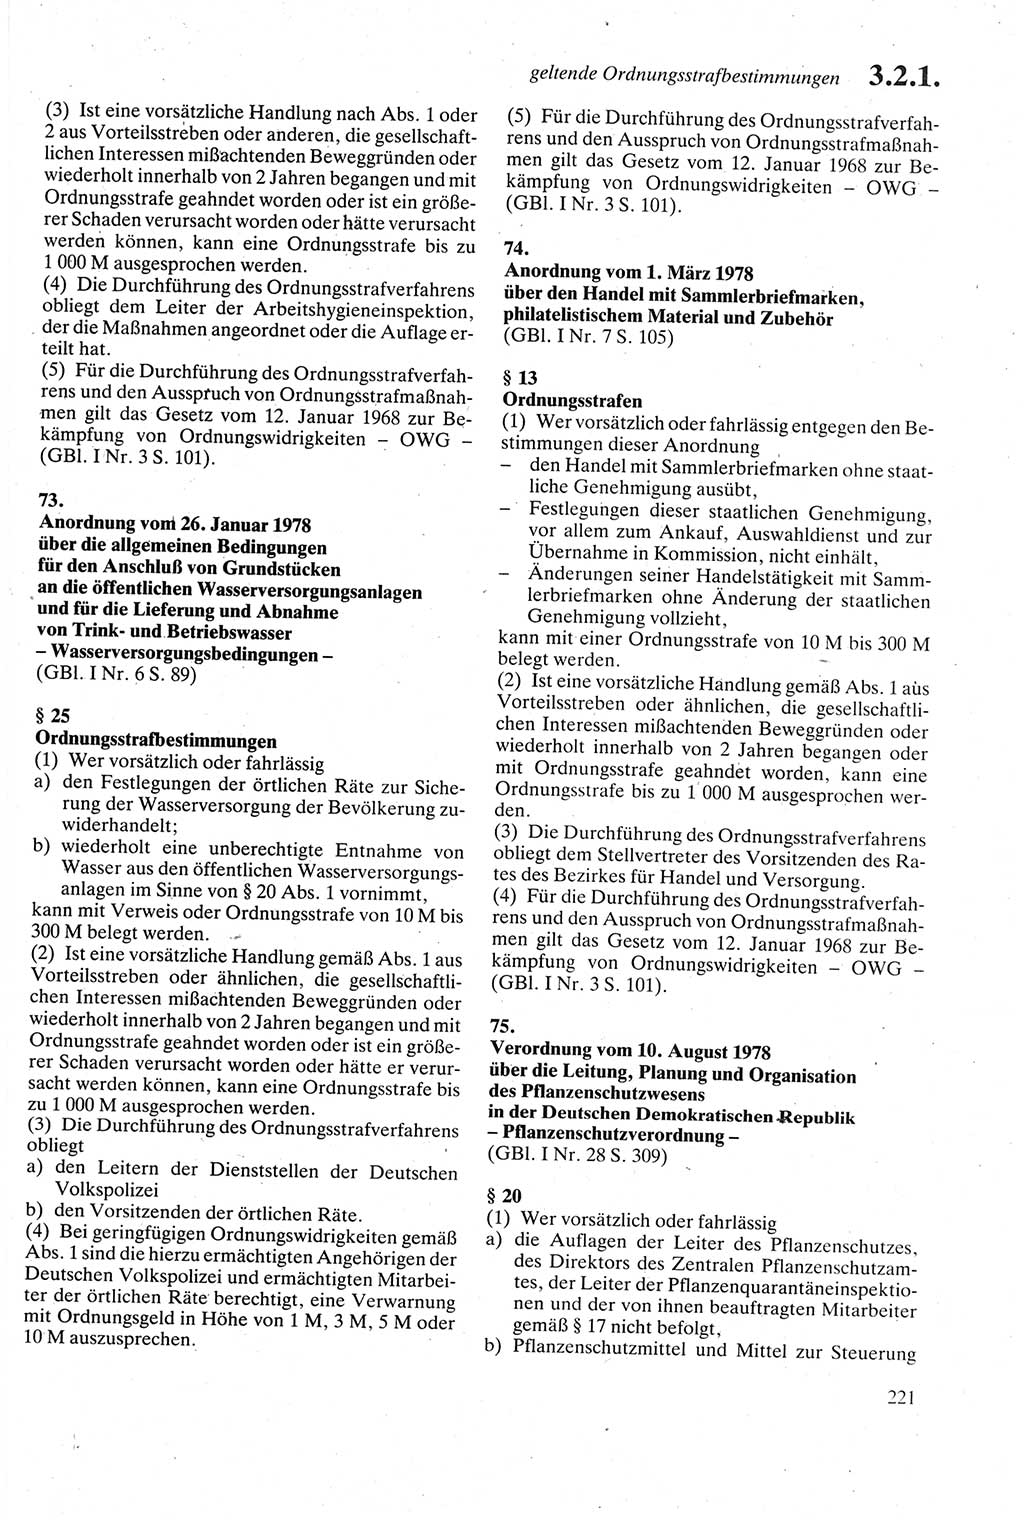 Strafgesetzbuch (StGB) der Deutschen Demokratischen Republik (DDR) sowie angrenzende Gesetze und Bestimmungen 1979, Seite 221 (StGB DDR Ges. Best. 1979, S. 221)